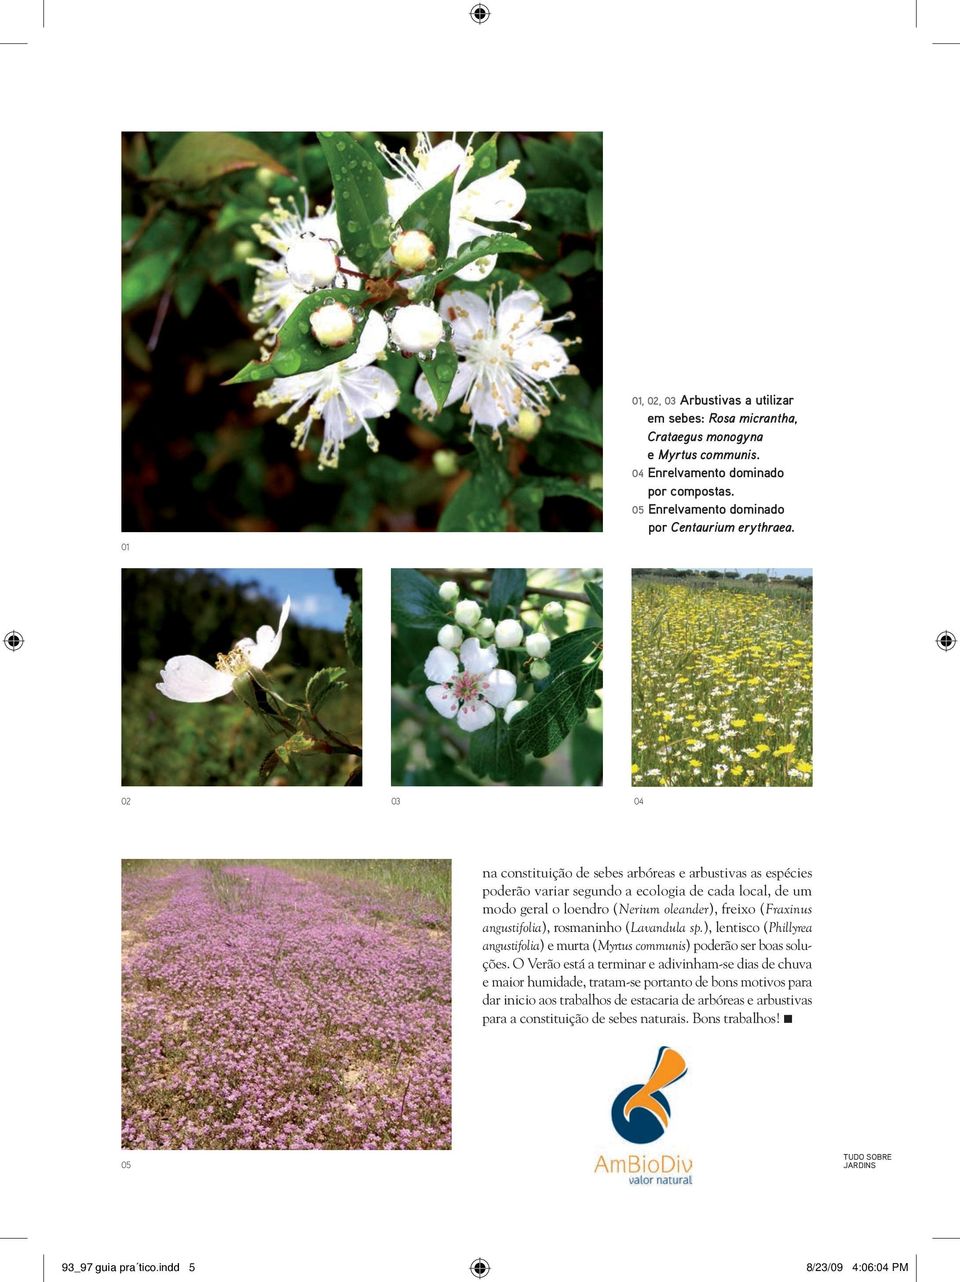 rosmaninho (Lavandula sp.), lentisco (Phillyrea angustifolia) e murta (Myrtus communis) poderão ser boas soluções.